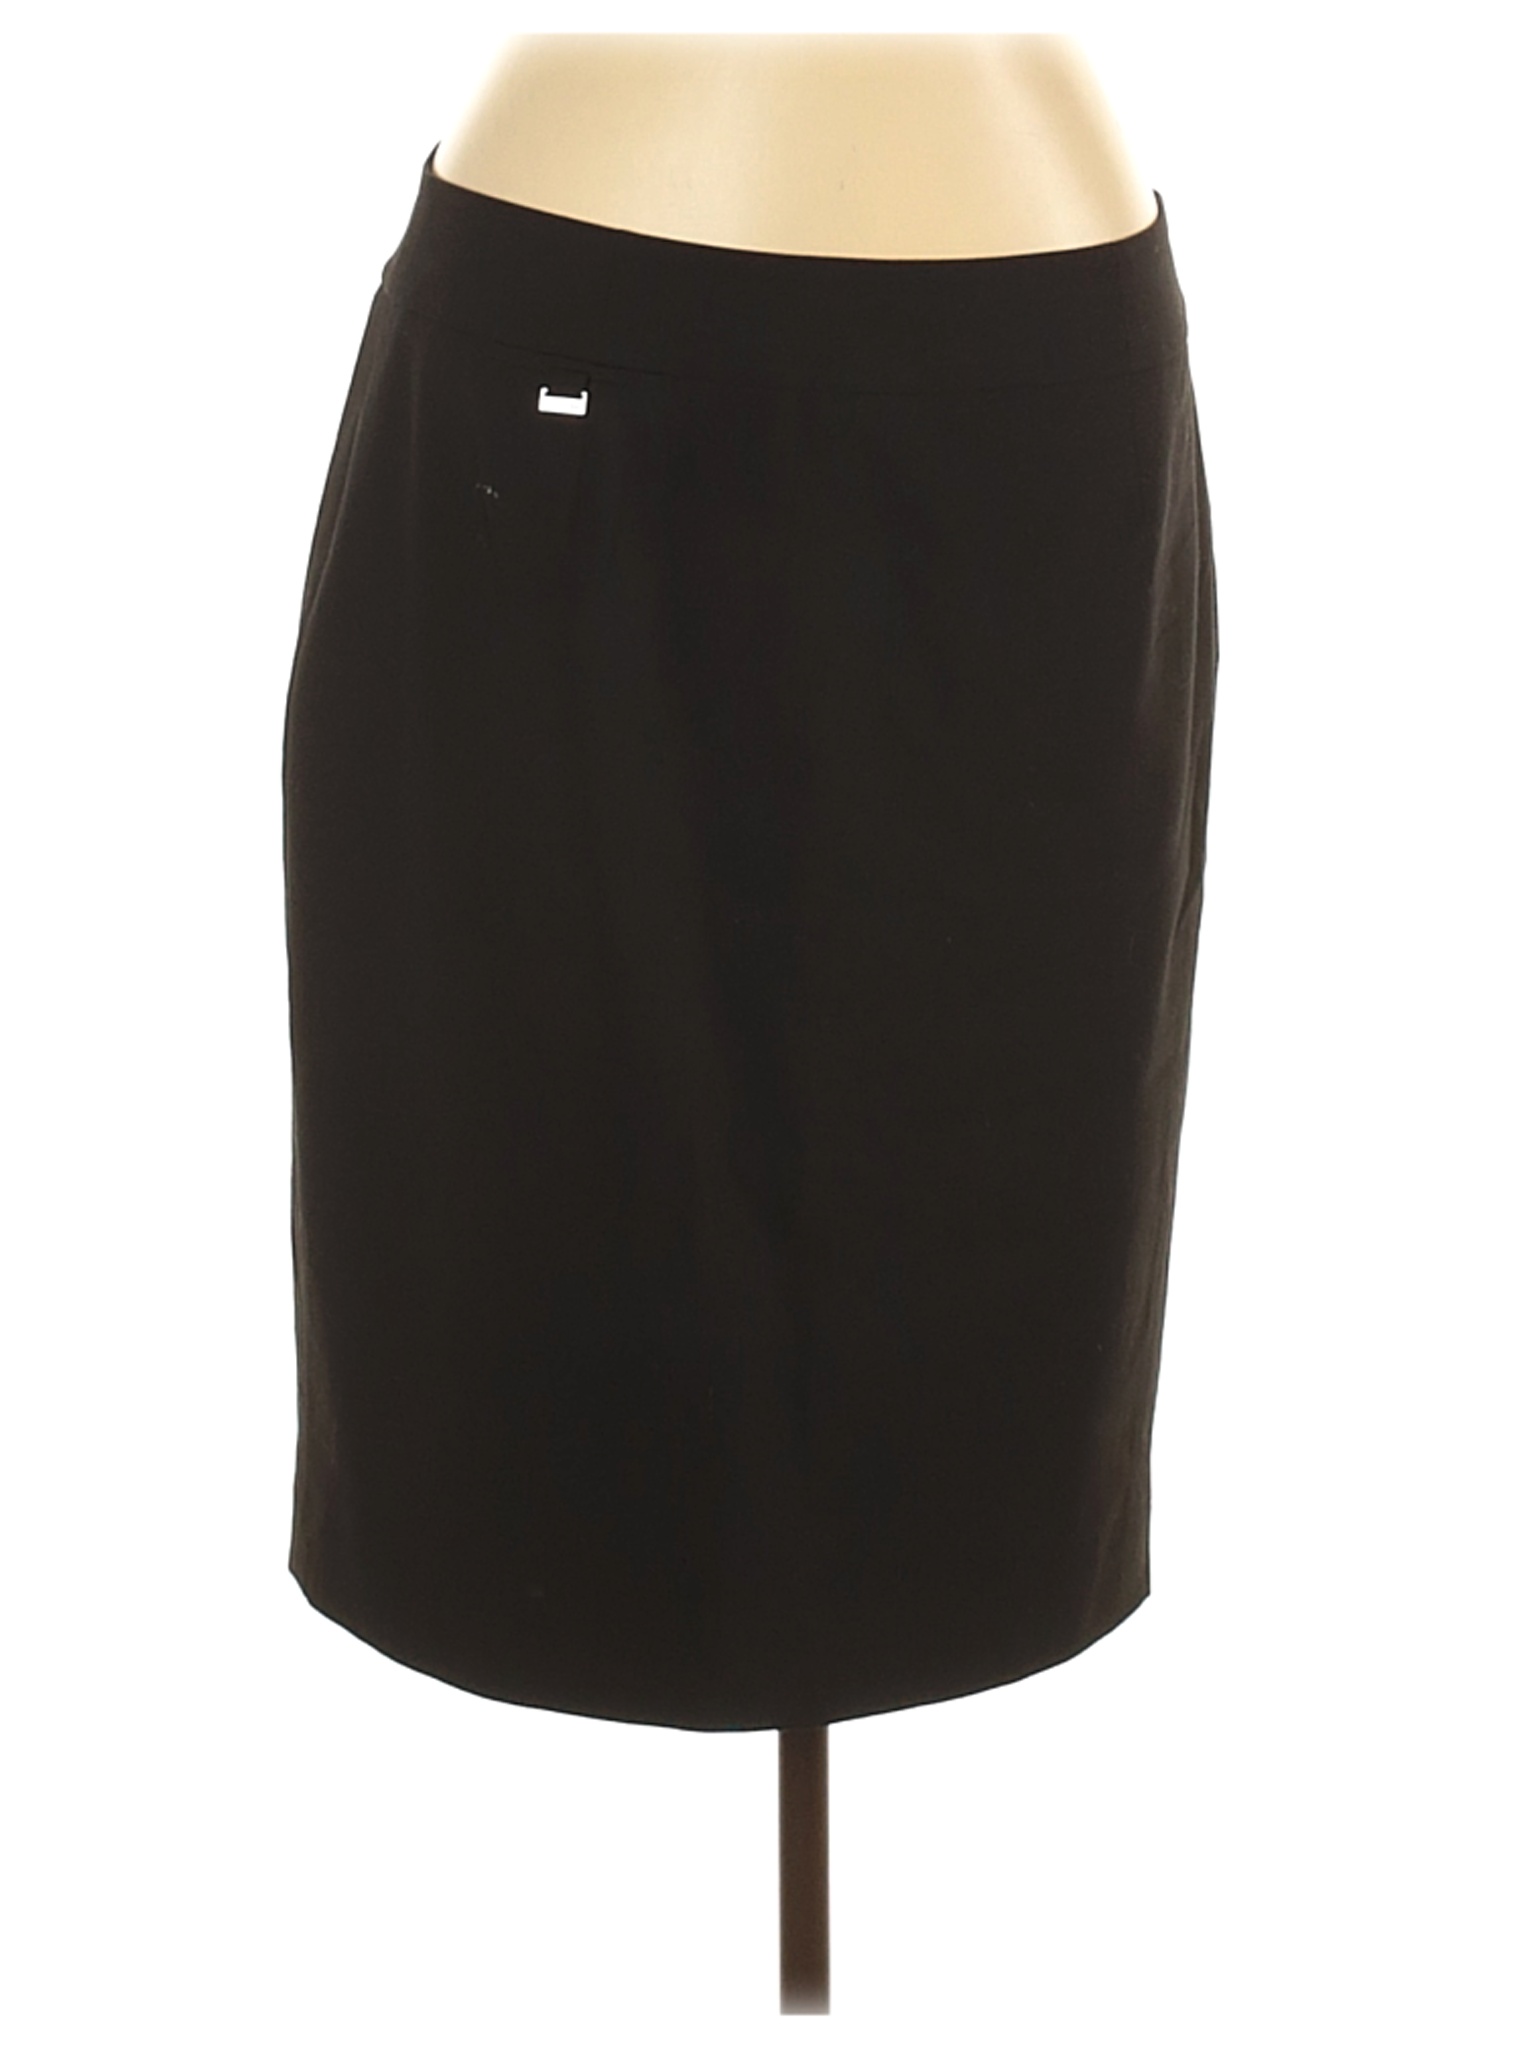 Calvin Klein Women Black Casual Skirt 12 | eBay